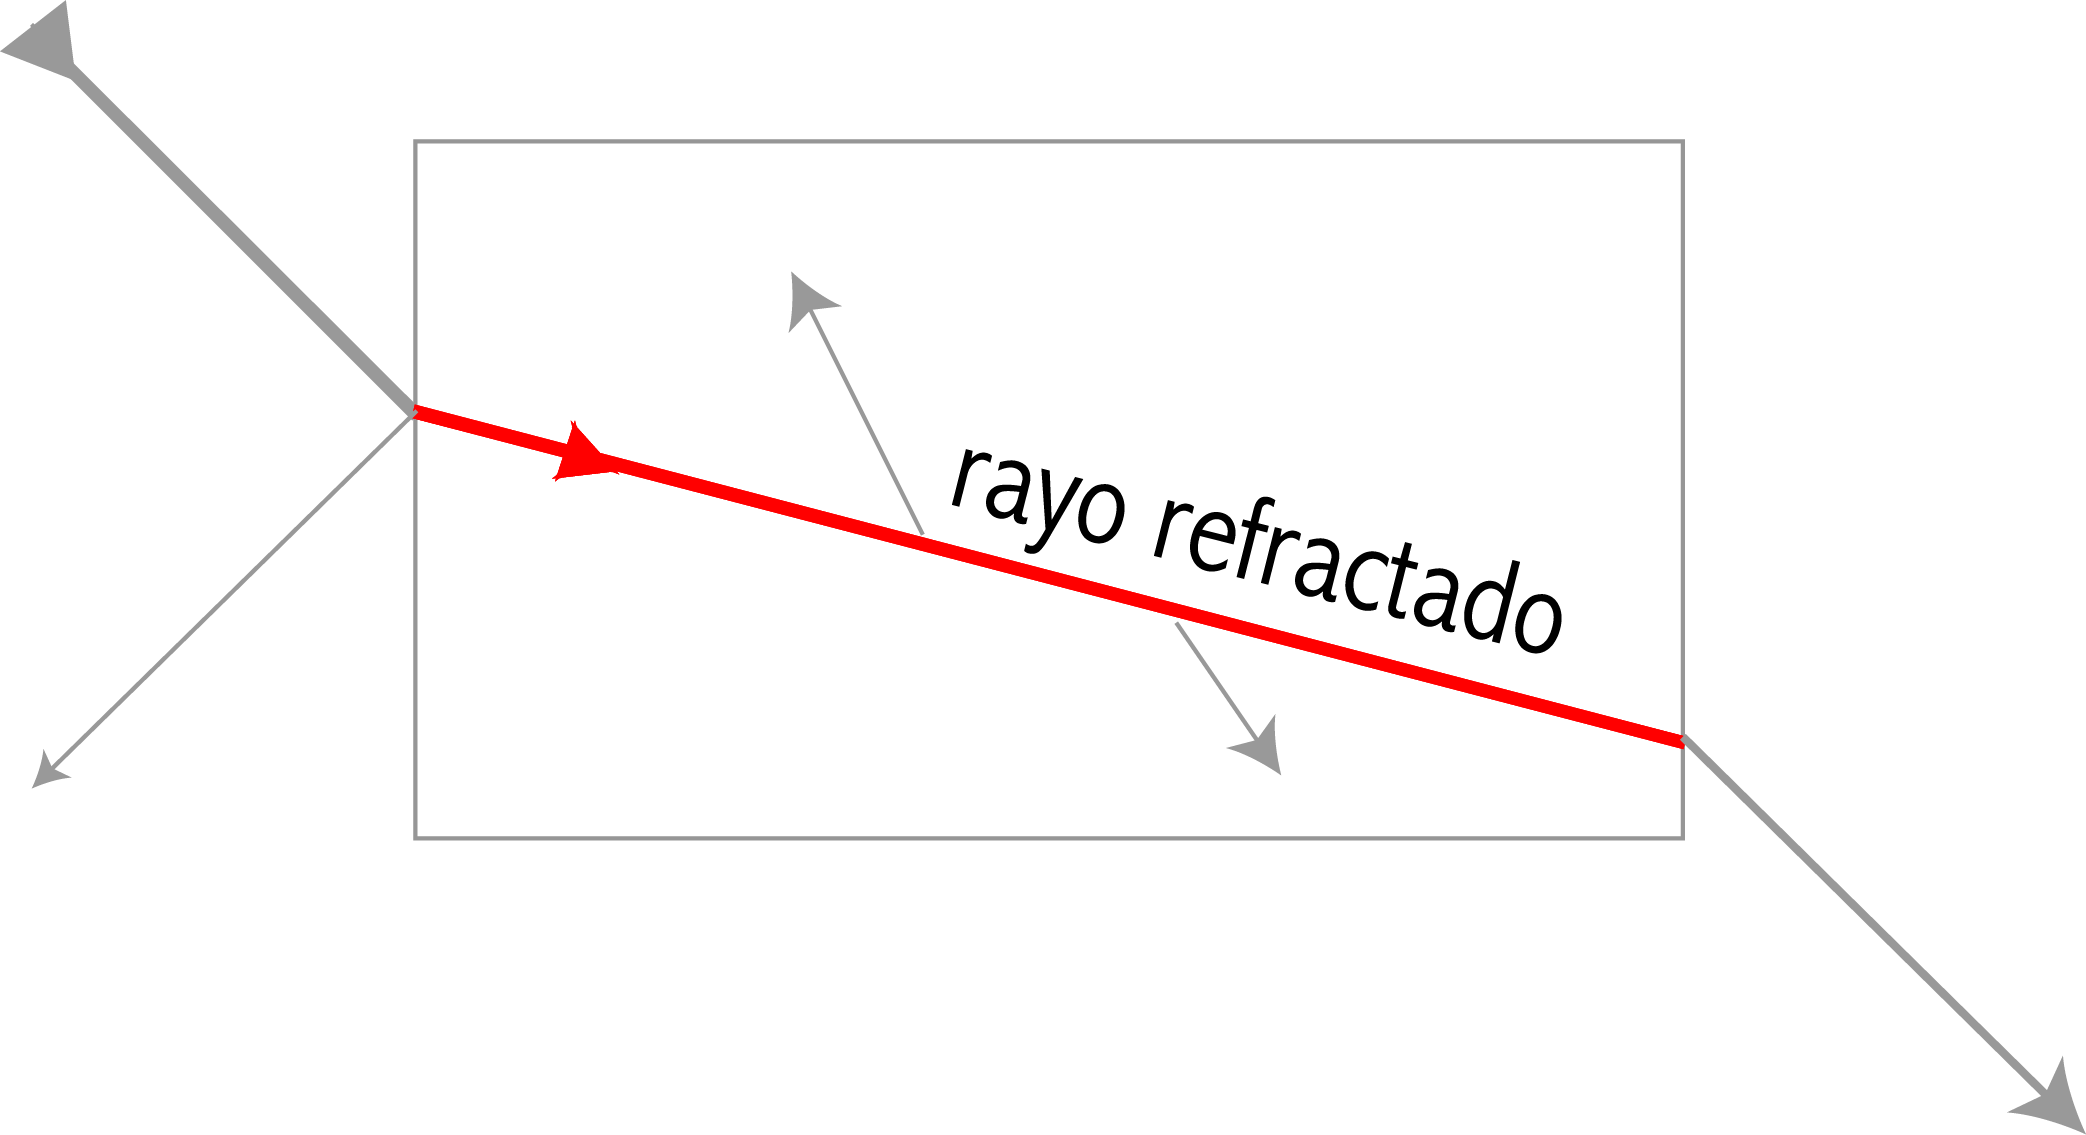 El proceso de refracción se muestra resaltado en rojo